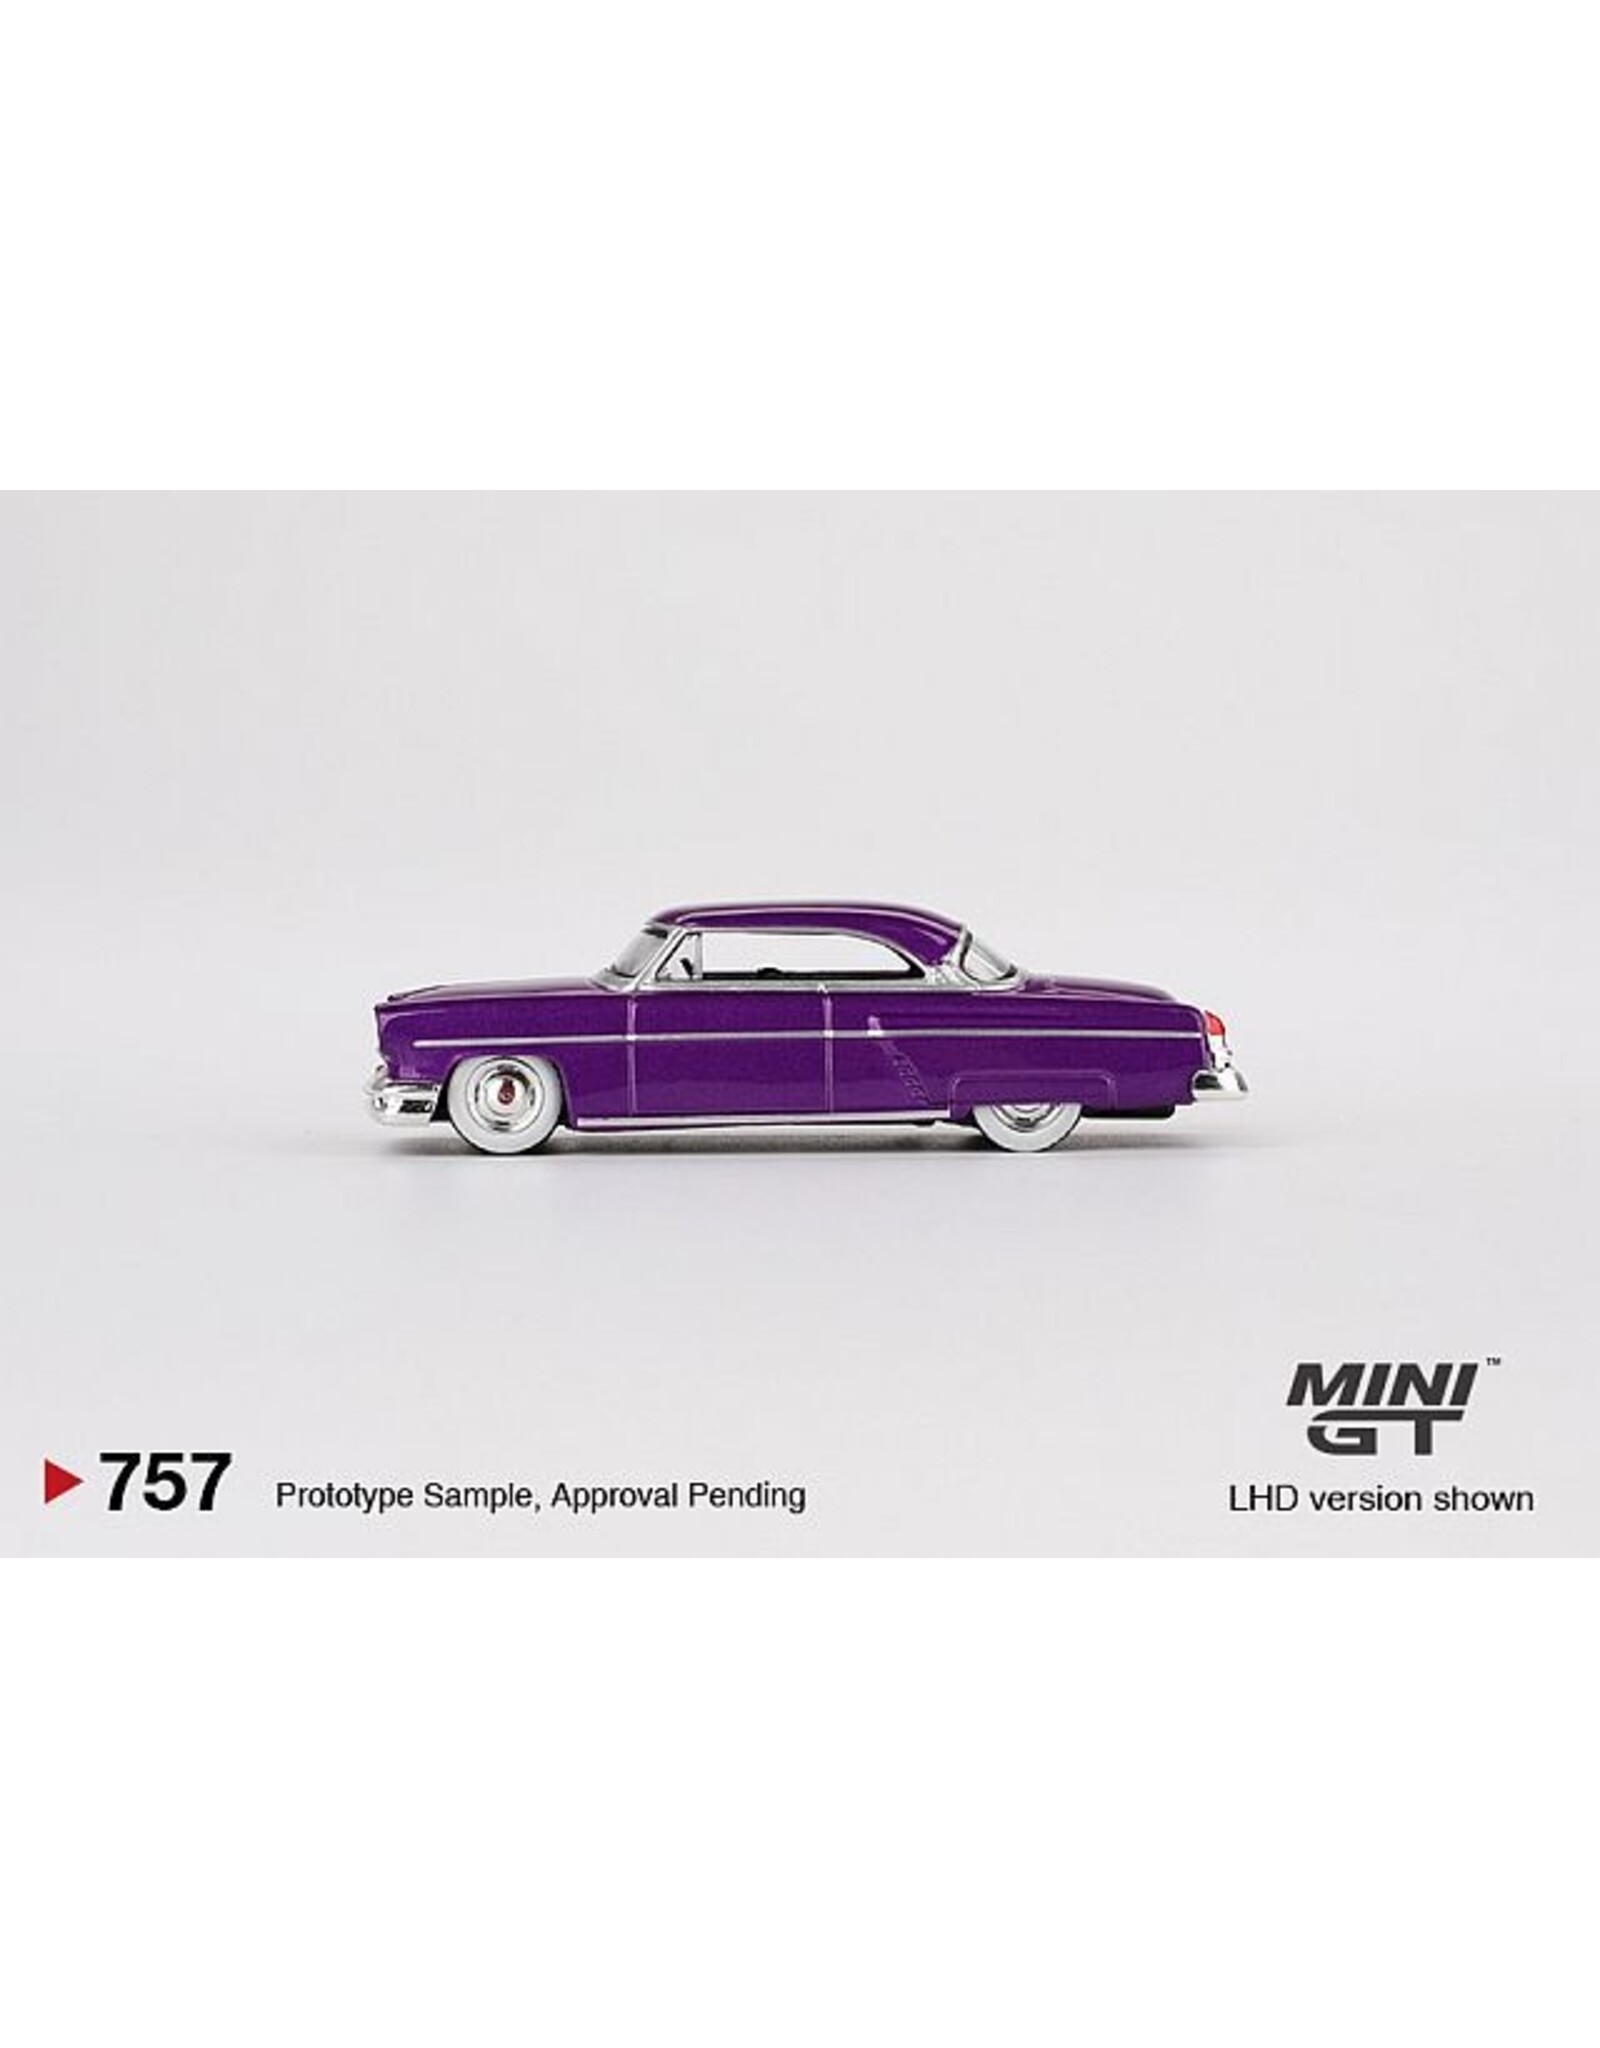 Lincoln Lincoln Capri(1954)Hot Rod(purple metallic)